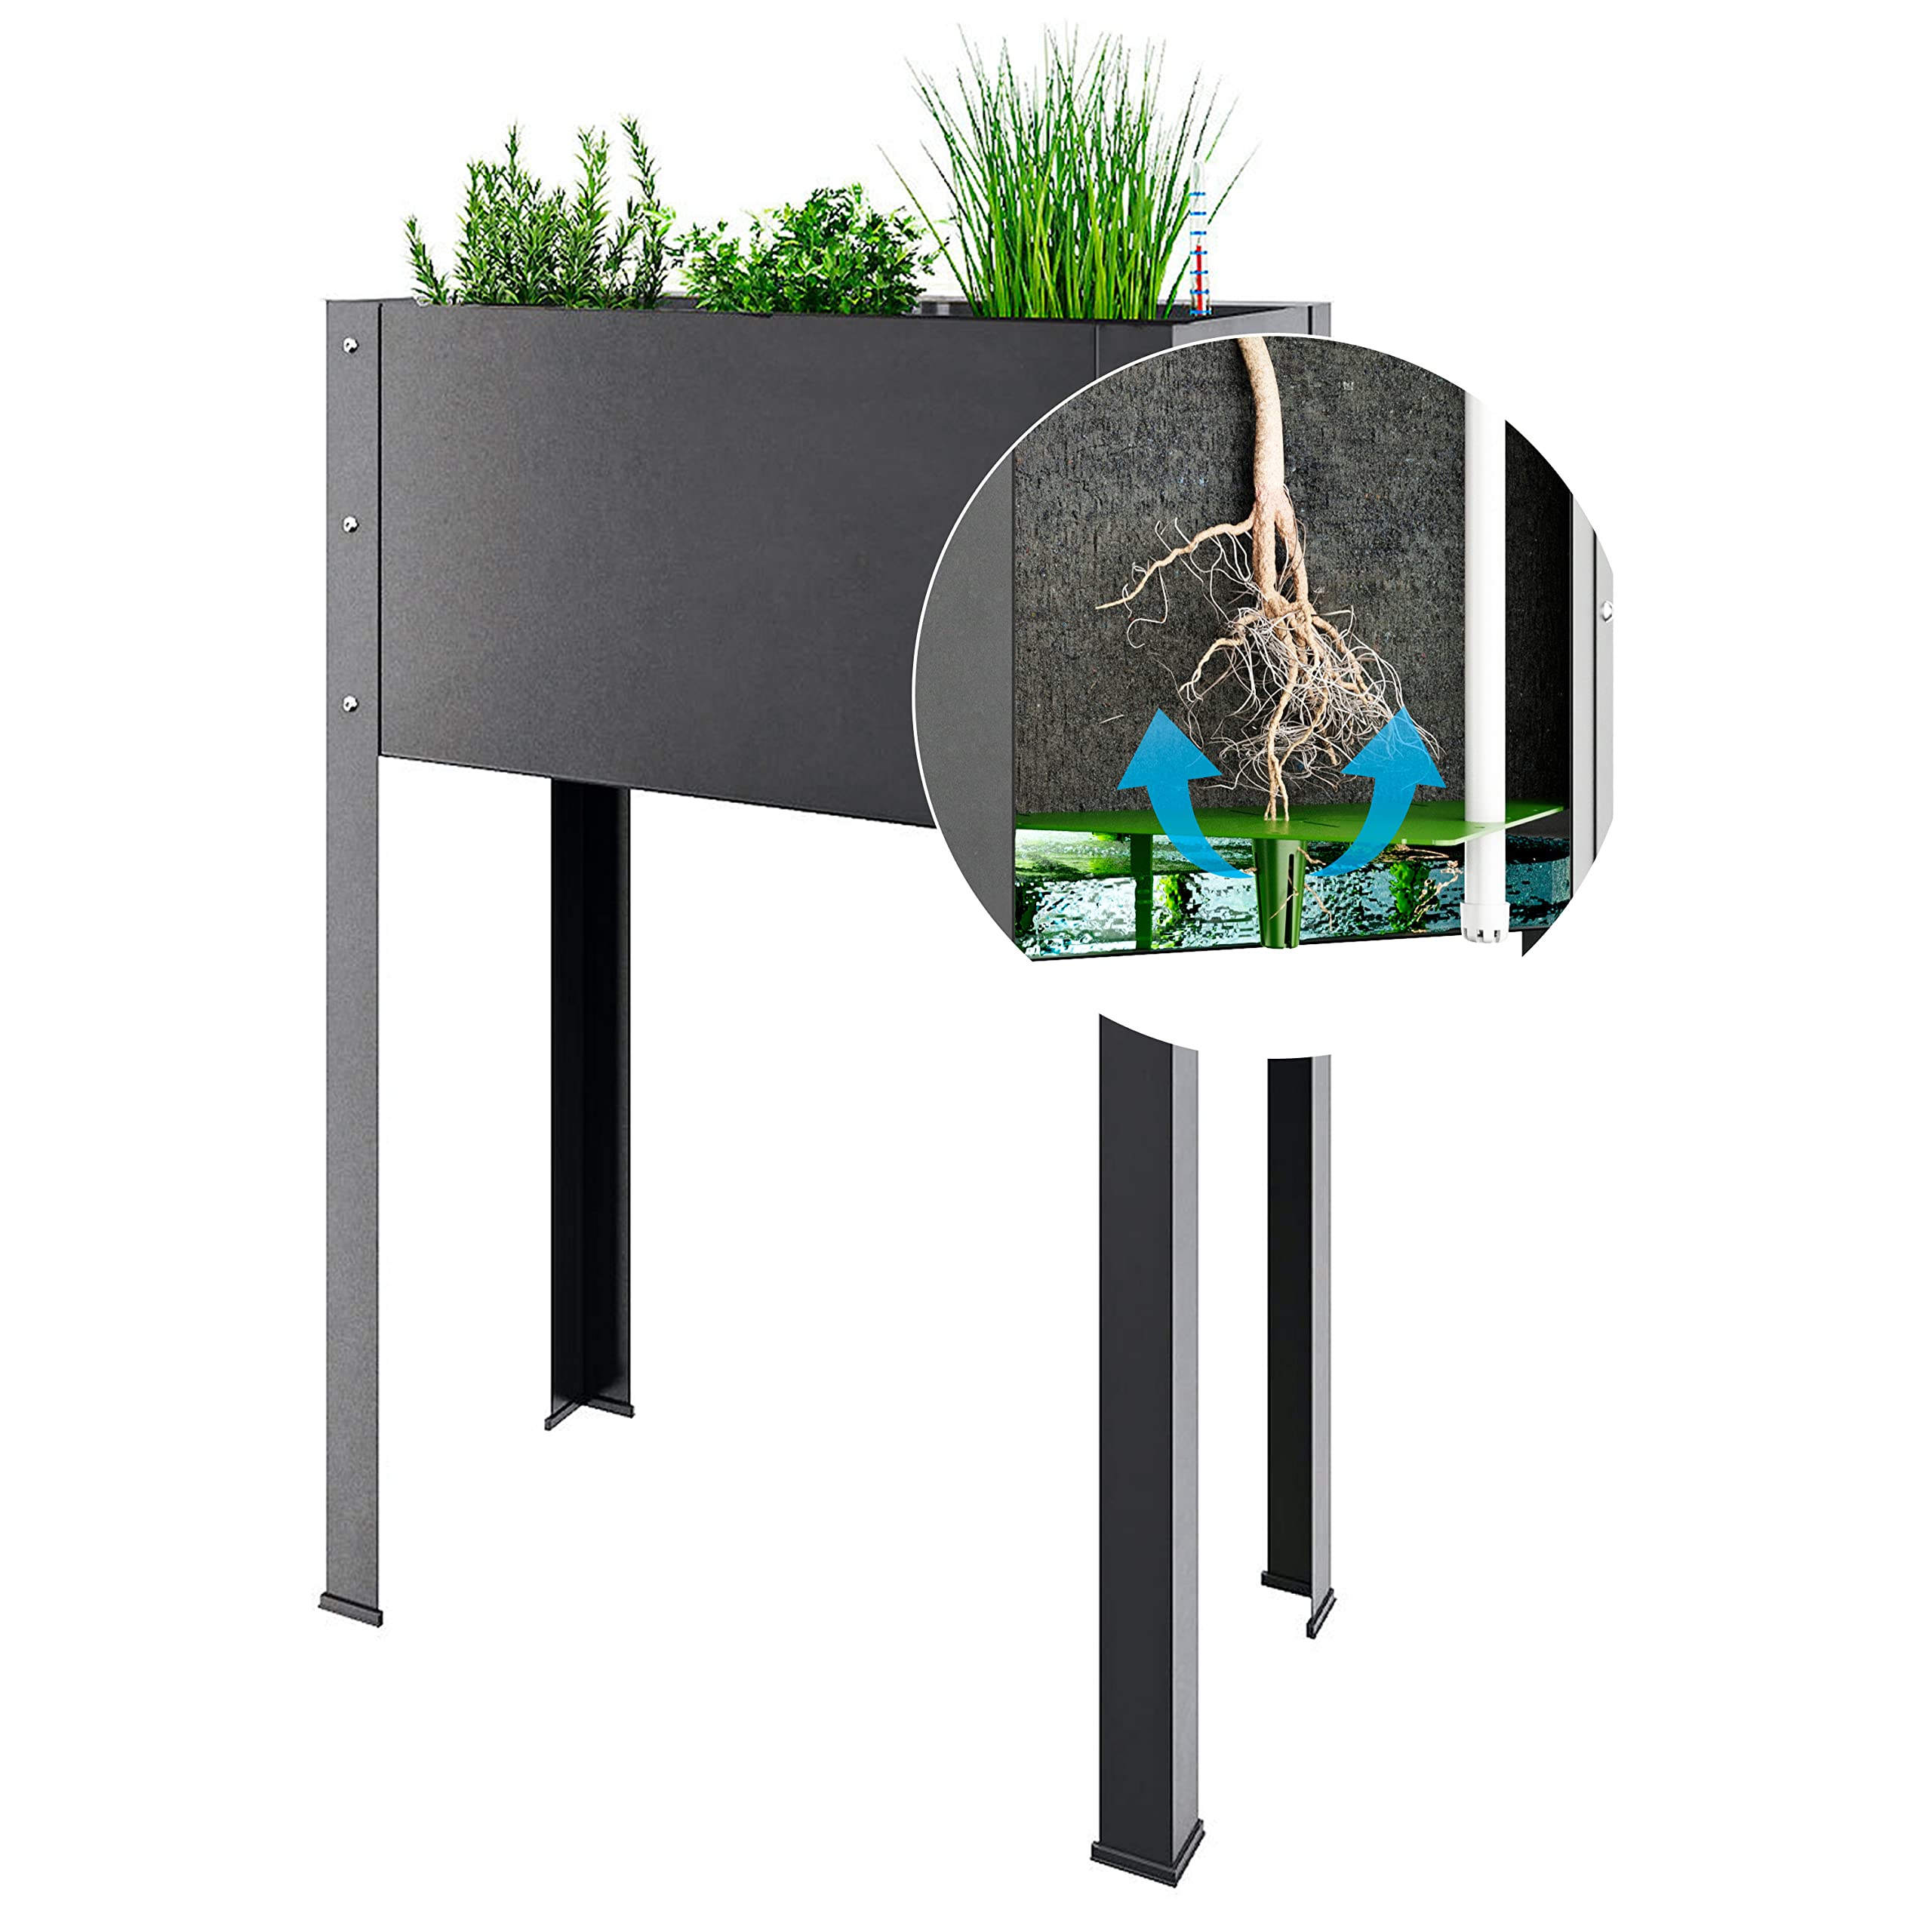 Bio Green Metall-Hochbeet City Jungle Heidelberg für Innen und Außen | Bewässerungssystem und Rankgitter integriert | Pflanzkübel für Gemüse, Kräuter und Blumen | B 62 x T 32 x H 160 cm